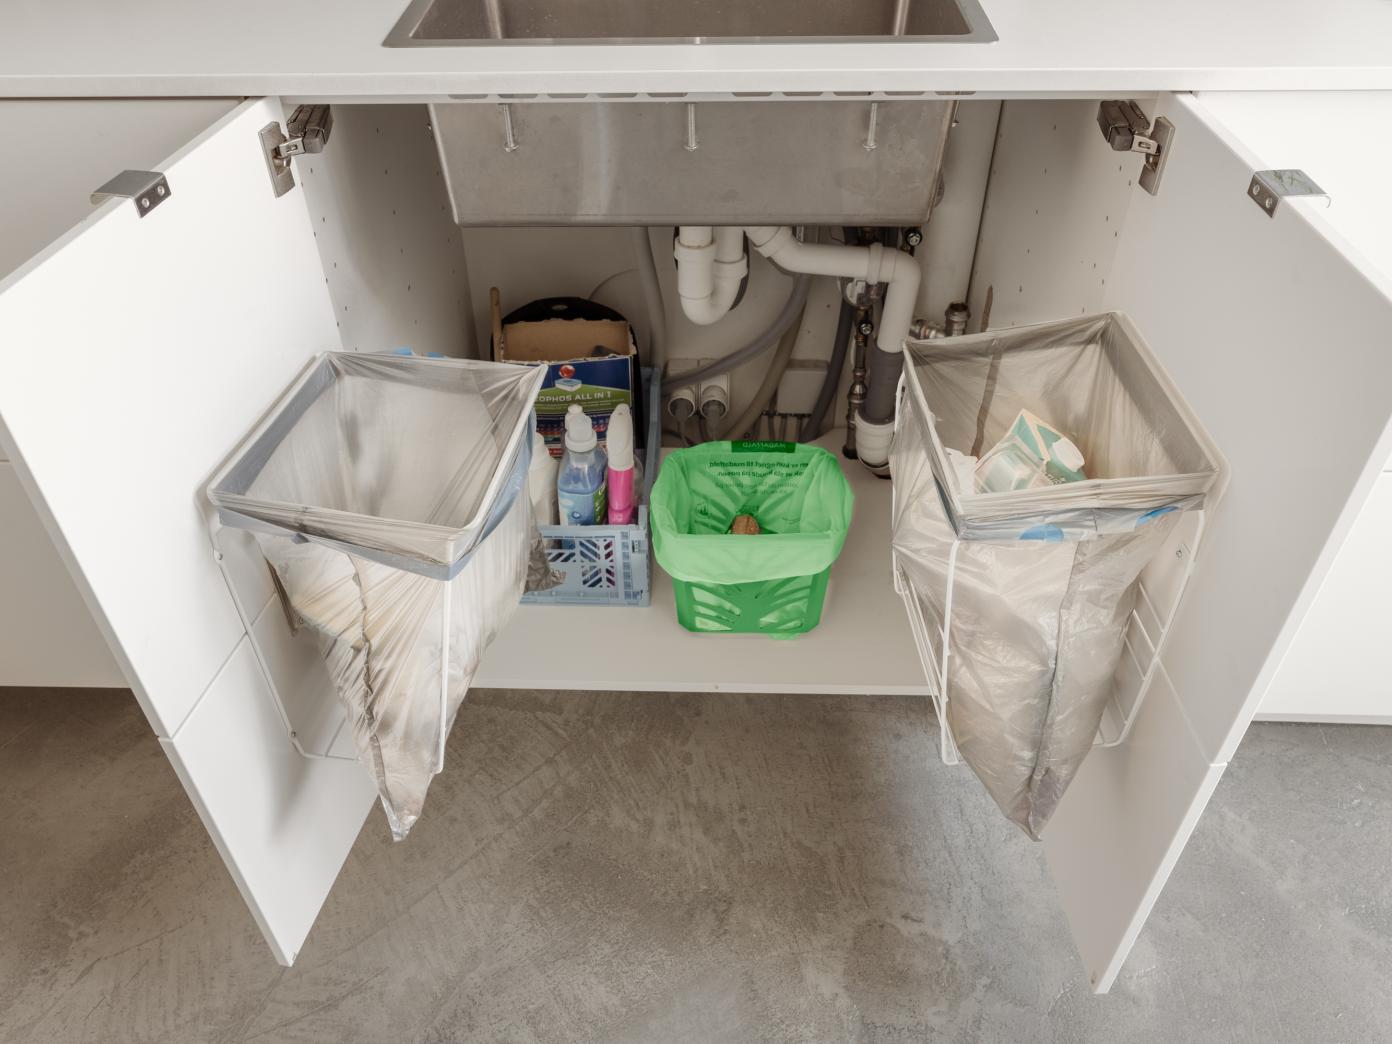 80 centimeter bredt skab med to låger under køkkenvask. På hver låge er fastgjort stativ med affaldspose til restaffald og plastaffald. I bunden af skabet under vasken står køkkenkurv til madaffald.